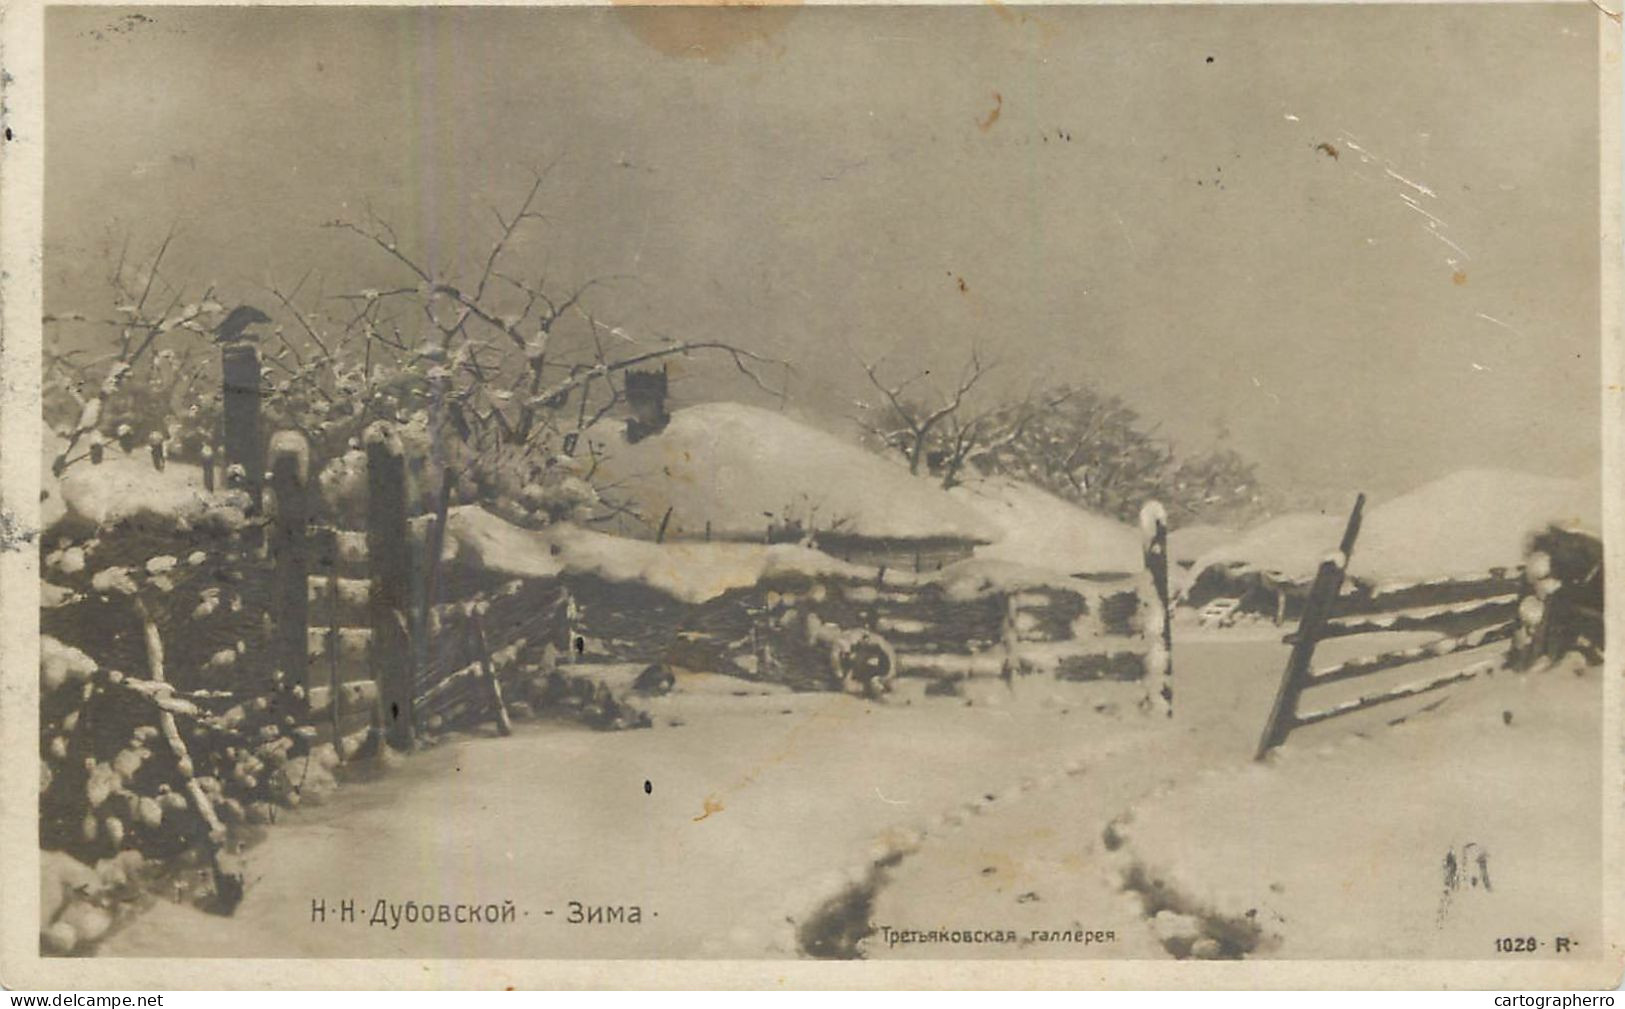 N.N. Dubovvskoy - Winter 1910 - Paintings